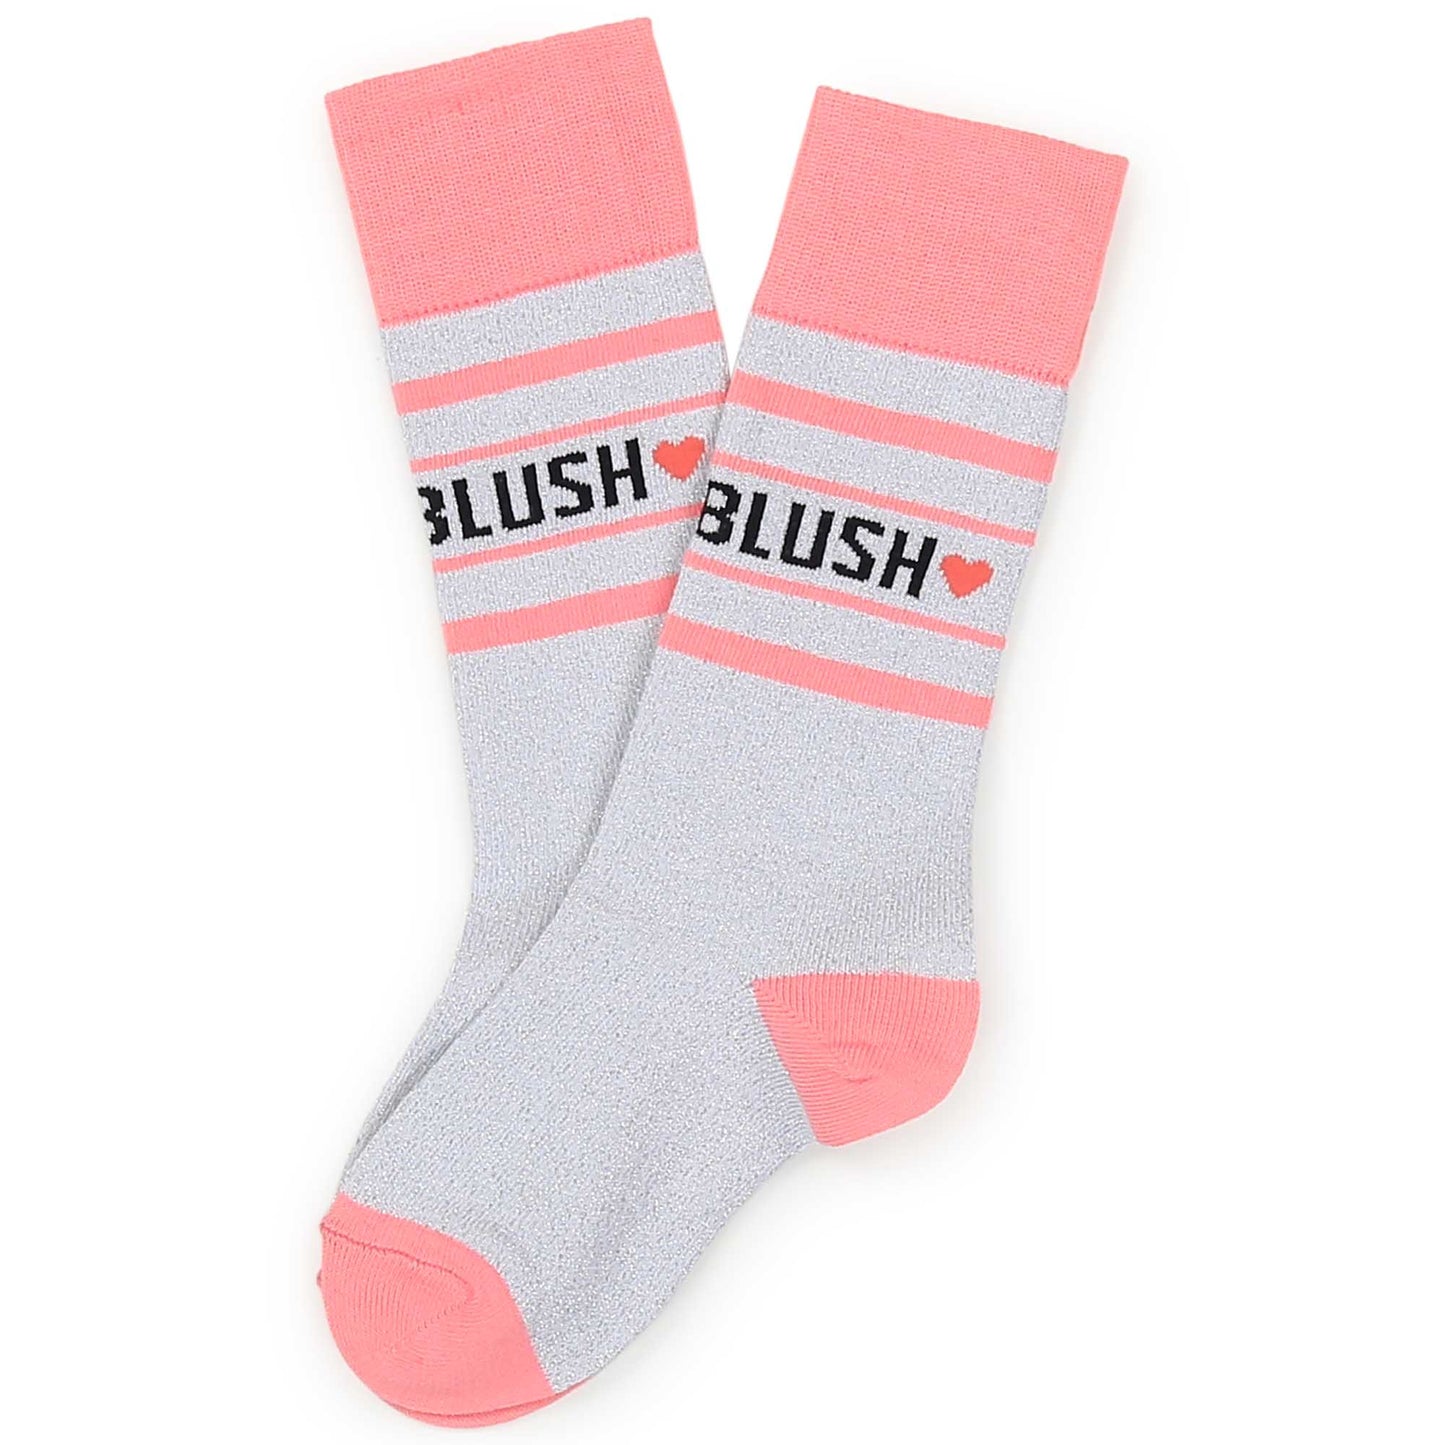 Billie Blush Girl's Silver Glitter Socks